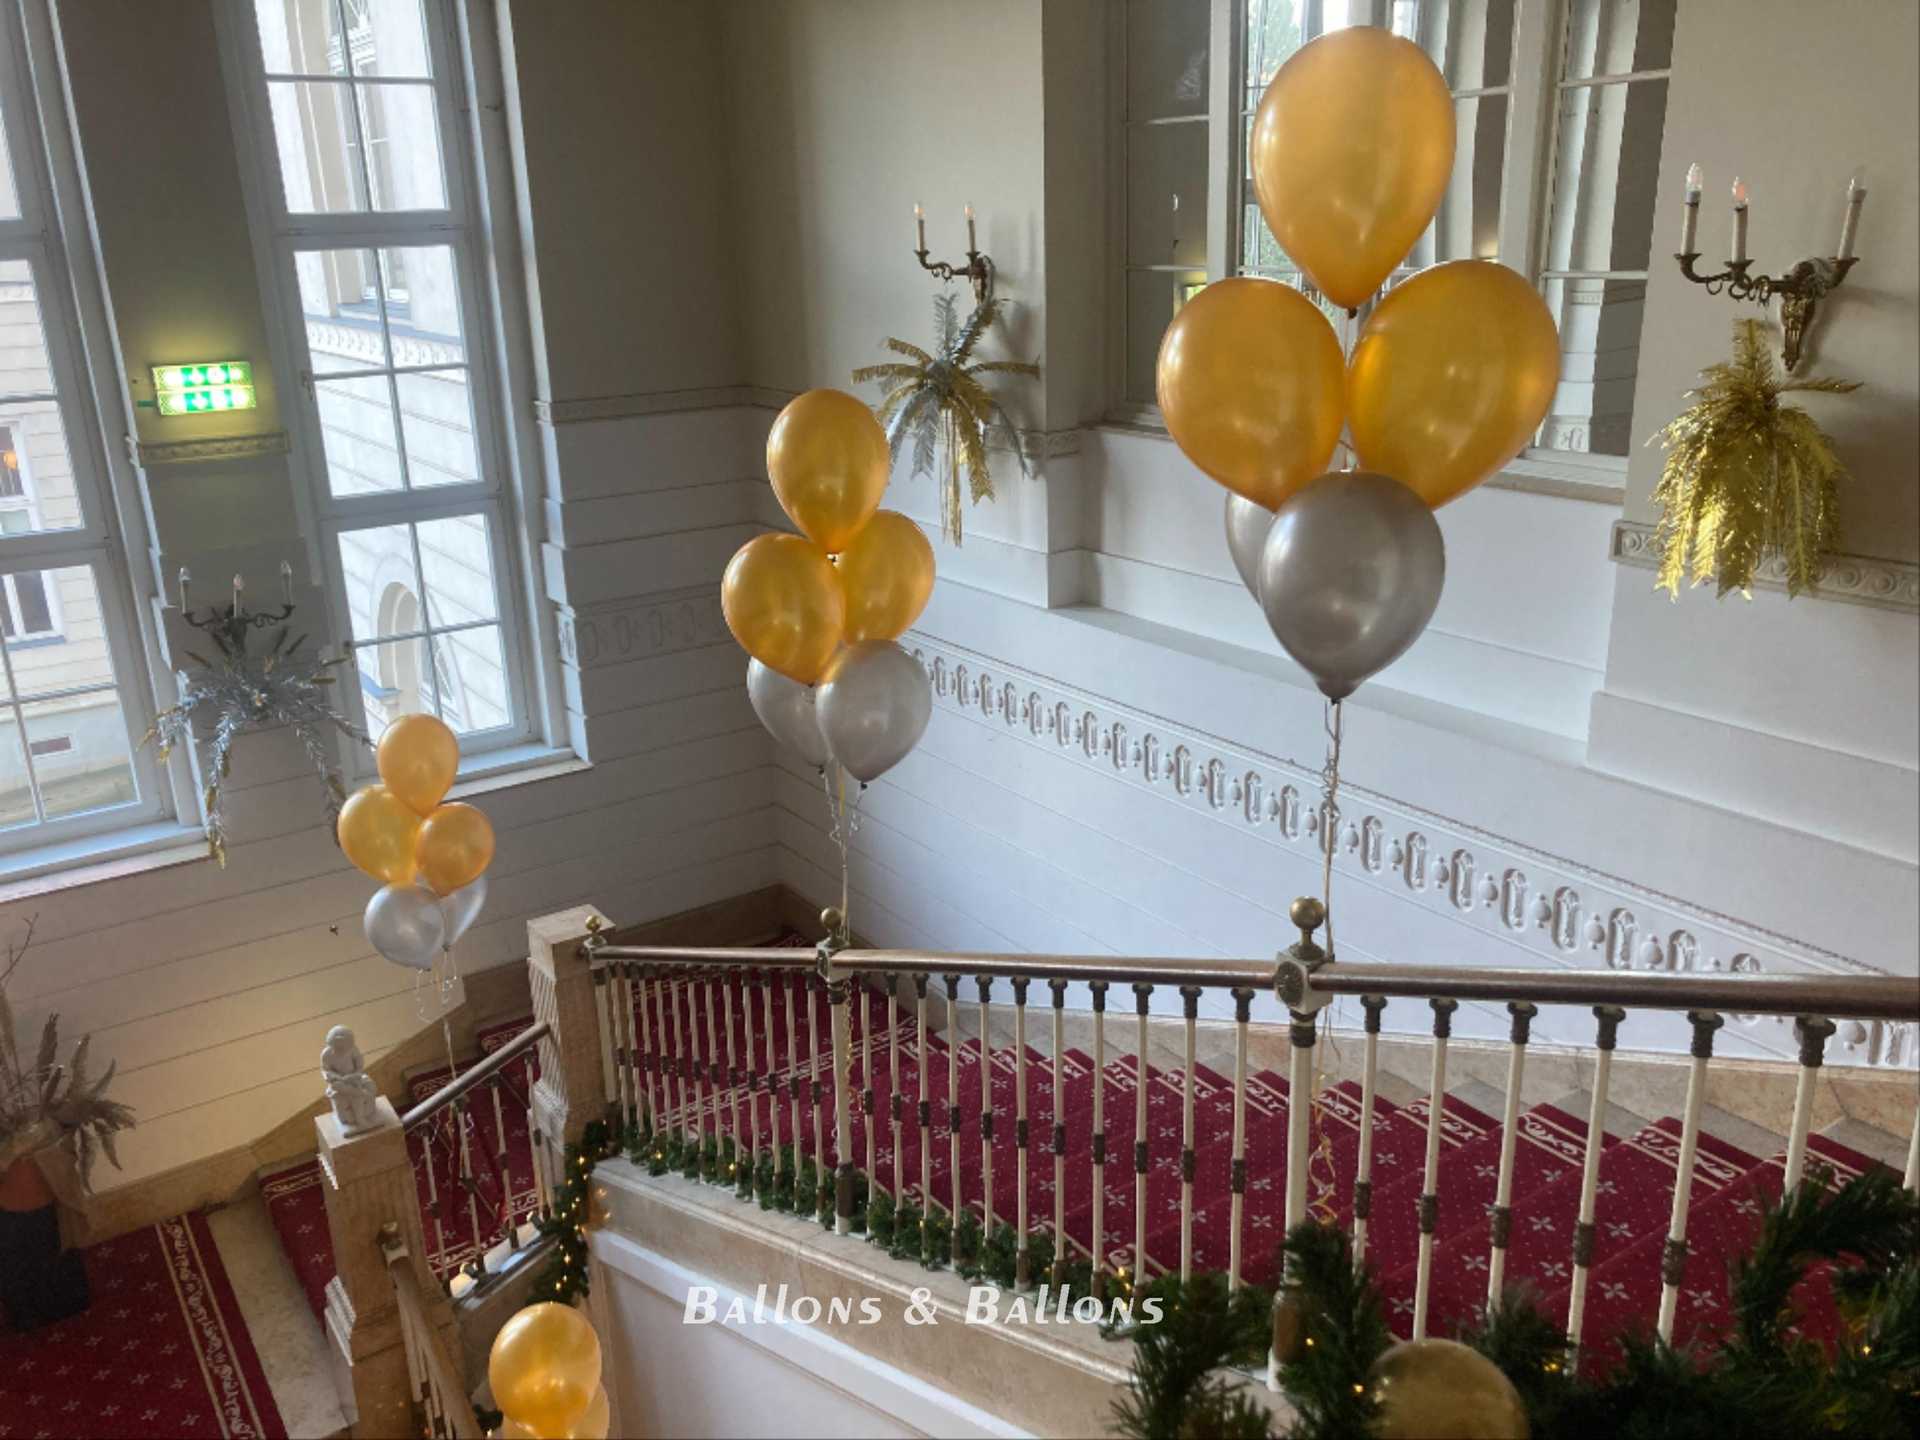 Viele goldene und silberne Ballons, die von einem Treppengeländer hängen, in Wien.